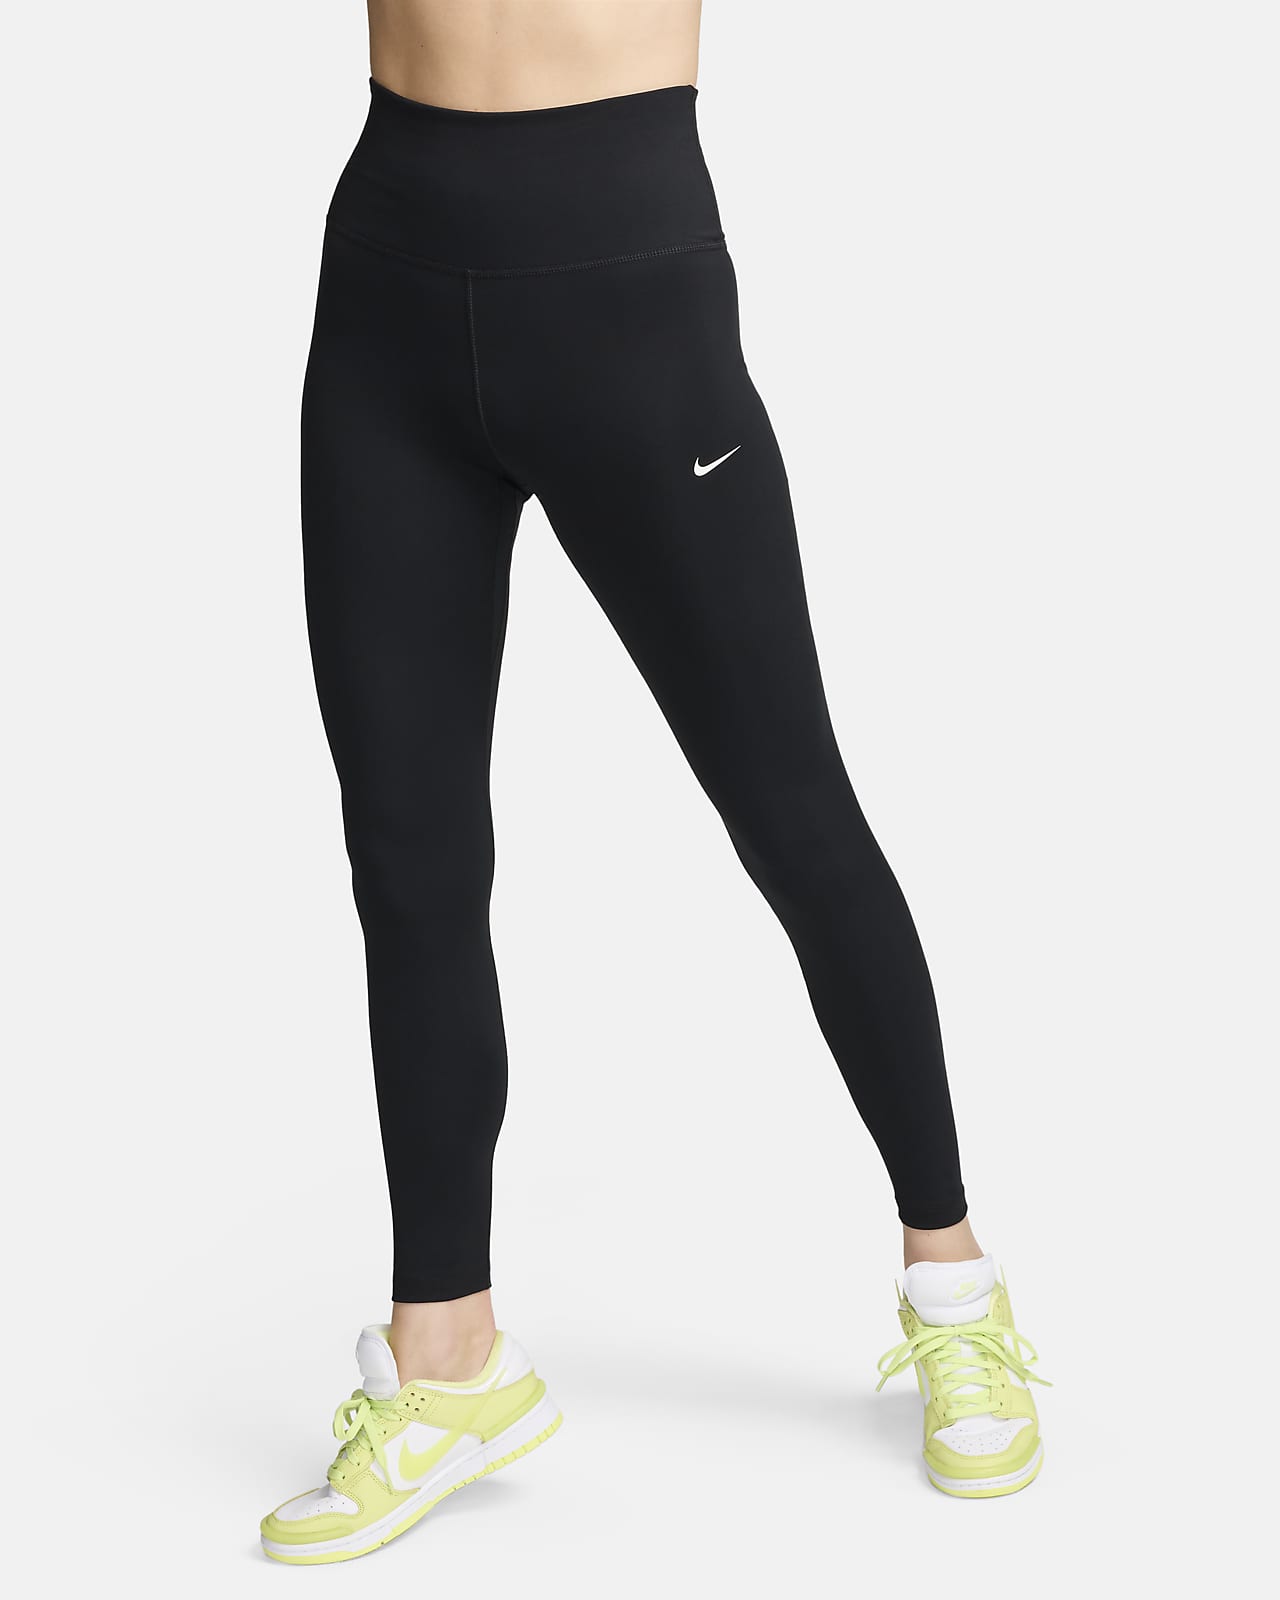 Legging long à taille haute Nike One pour femme